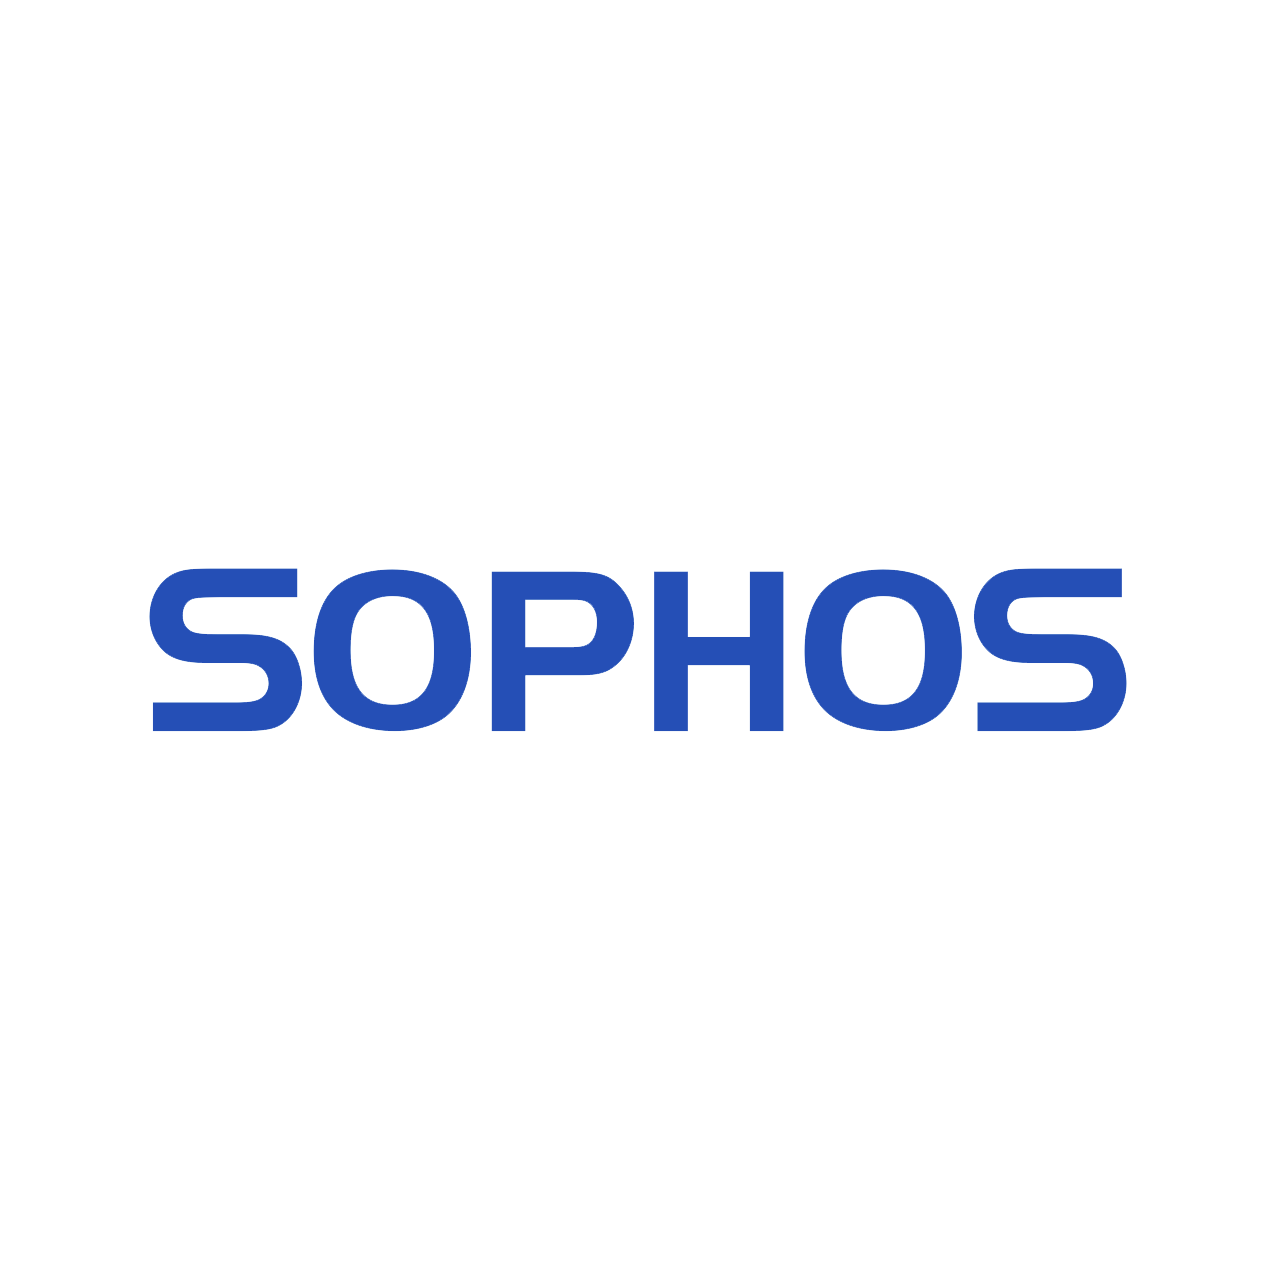 Sophos-ATC-LogoSQ.png